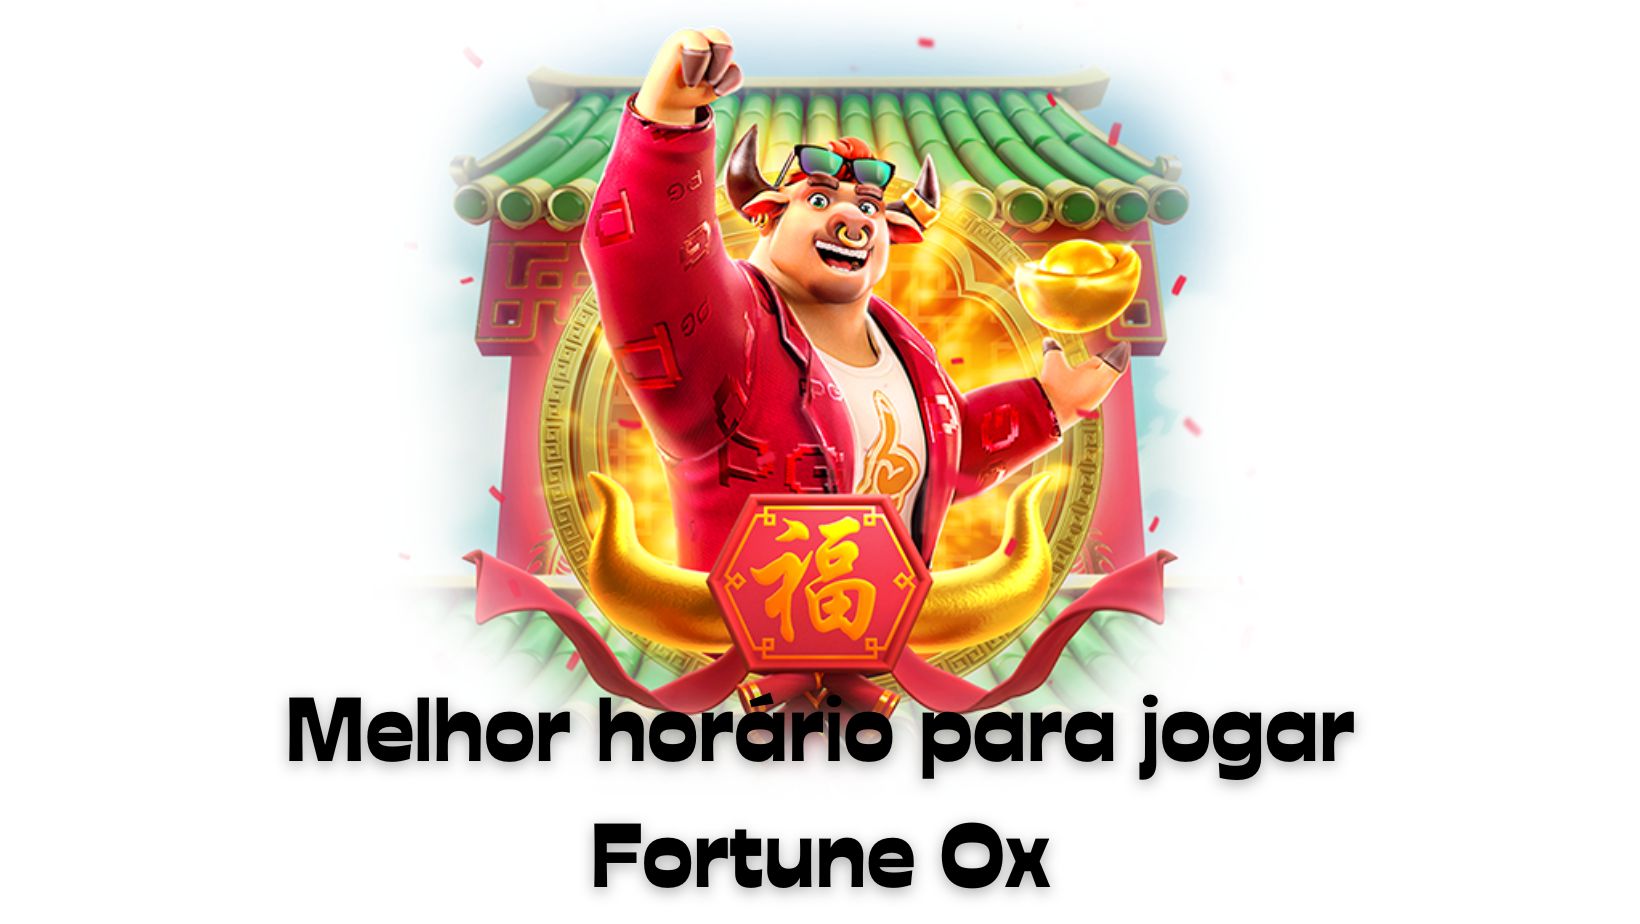 Melhor horário para jogar Fortune ox  - FortuneOx | Jogo do Touro FortuneOx